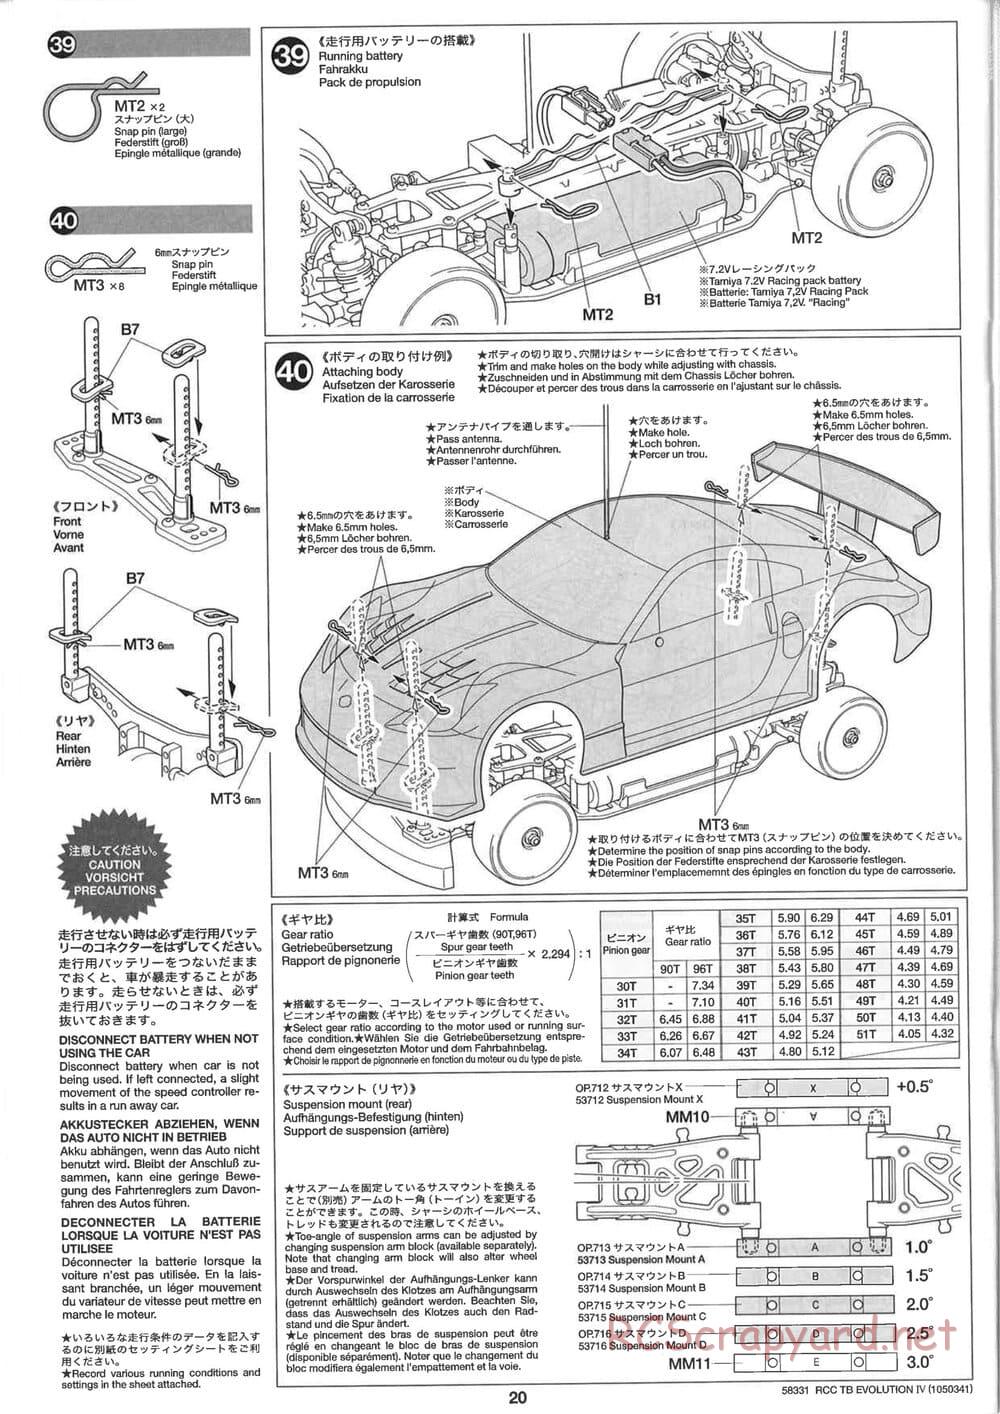 Tamiya - TB Evolution IV Chassis - Manual - Page 20